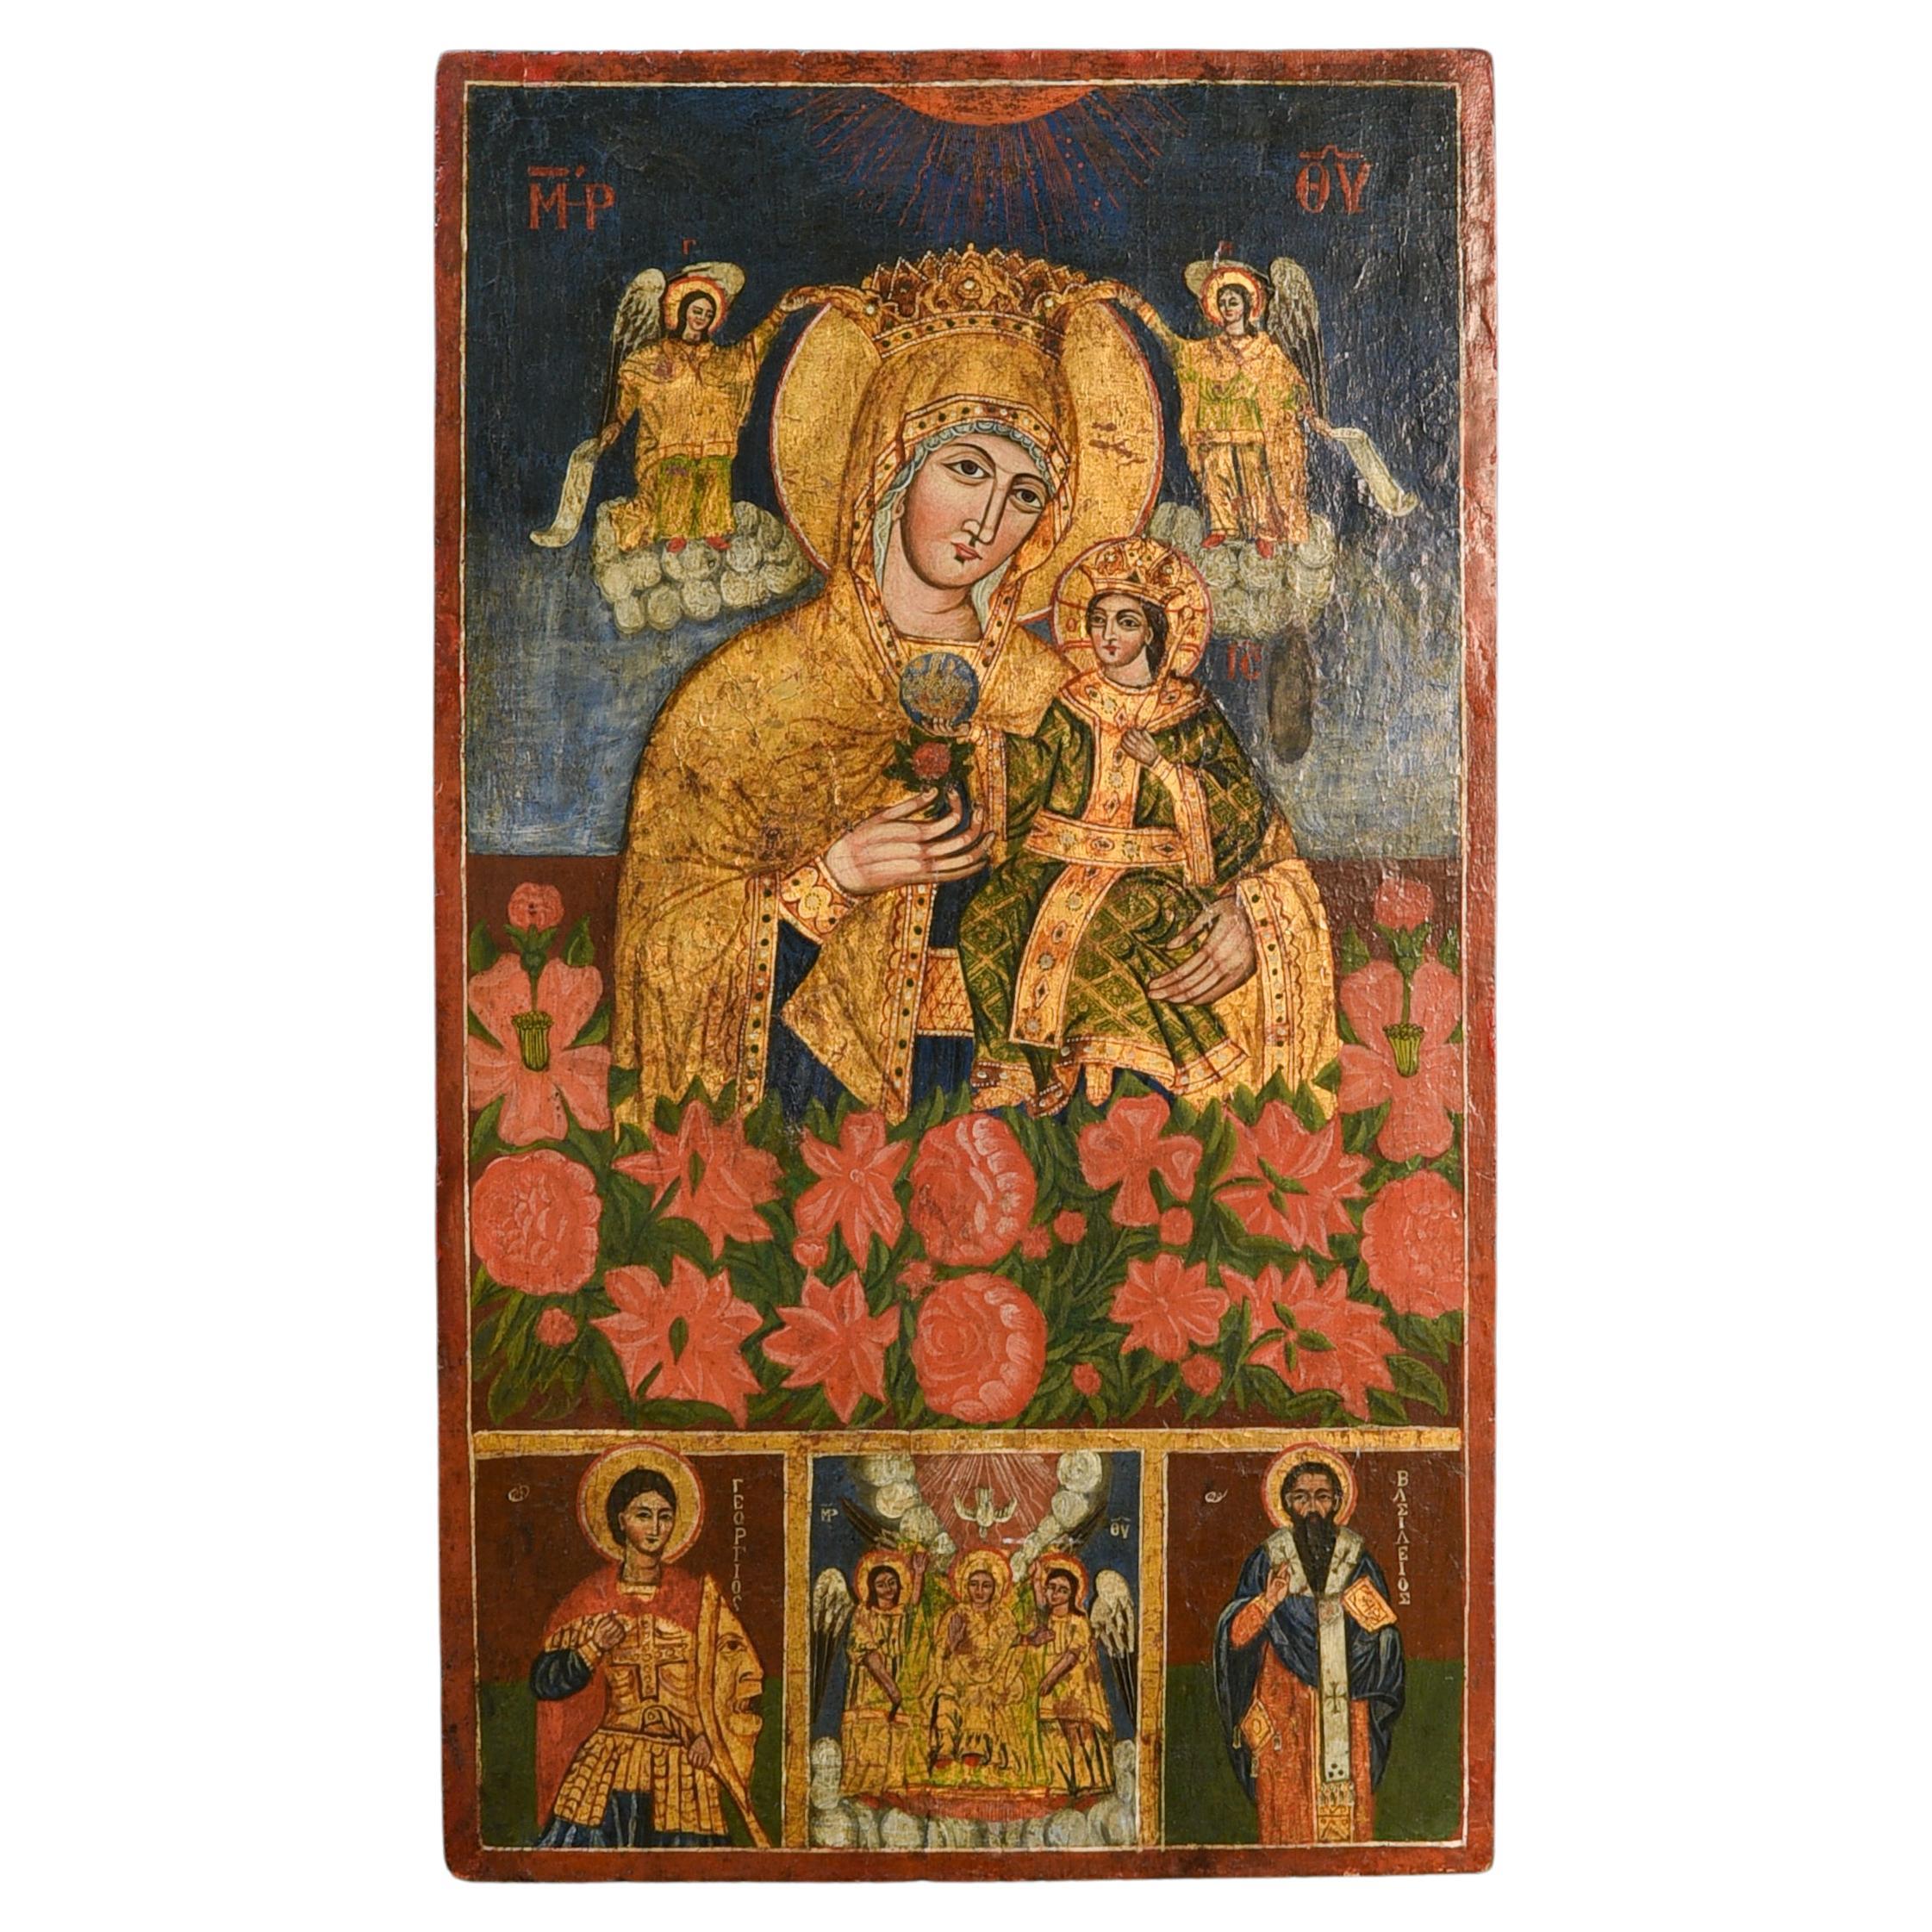 Griechisch-orthodoxe Ikone (1800) auf Holzplatte gemalt